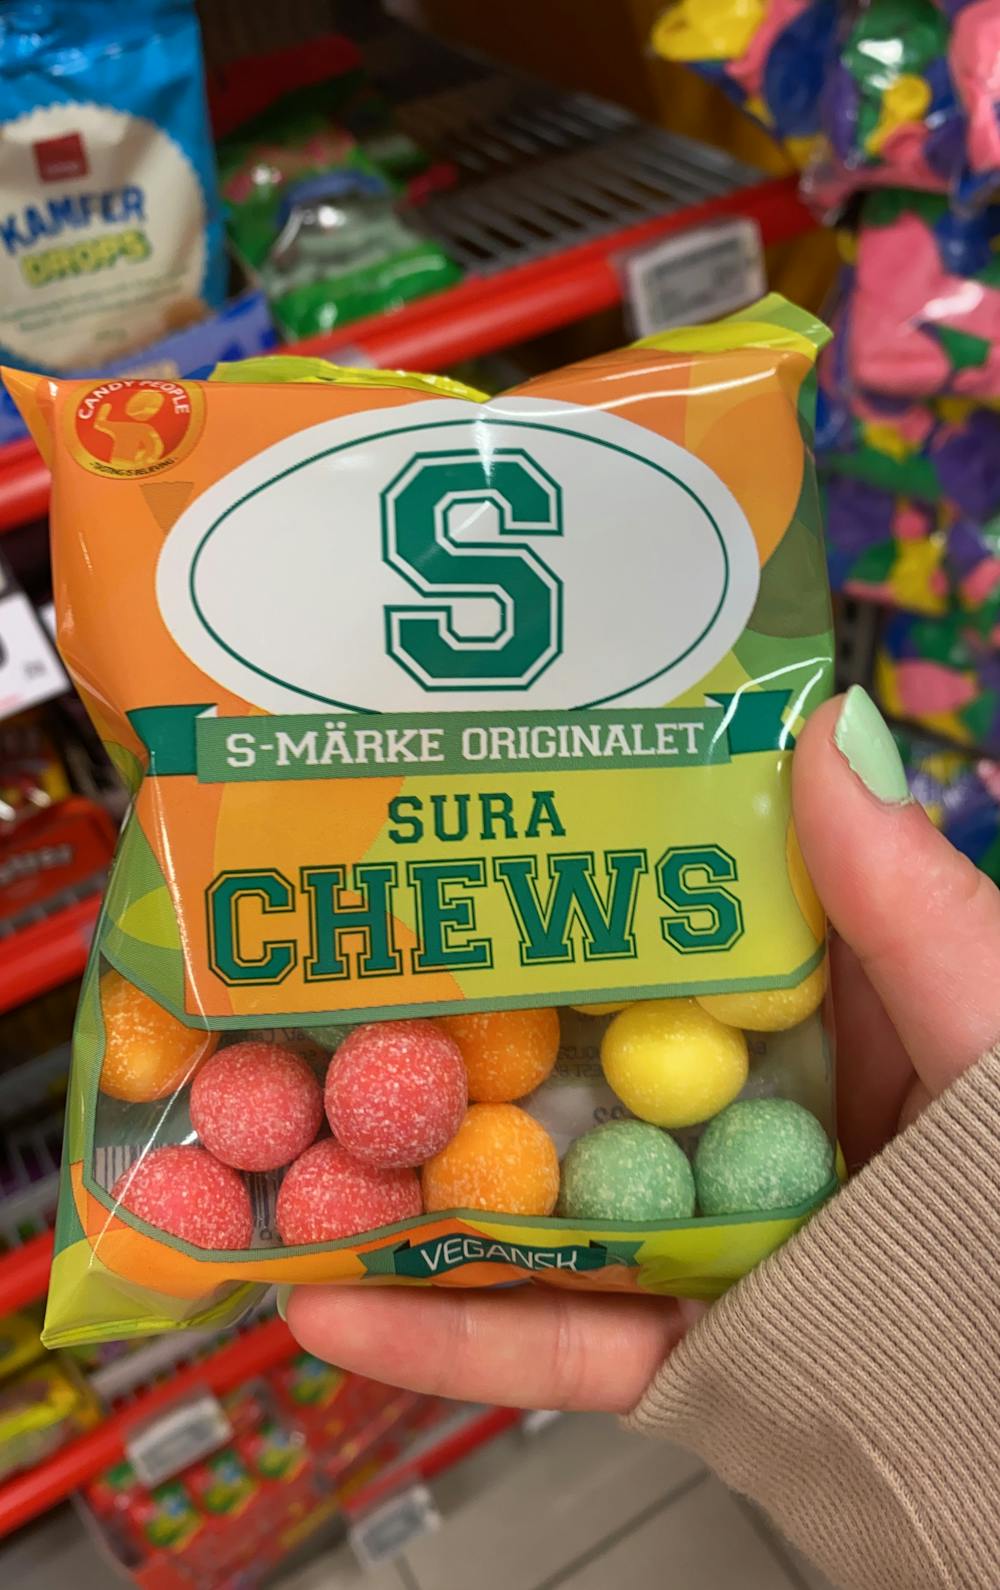 Sura chews, S-märke originalet